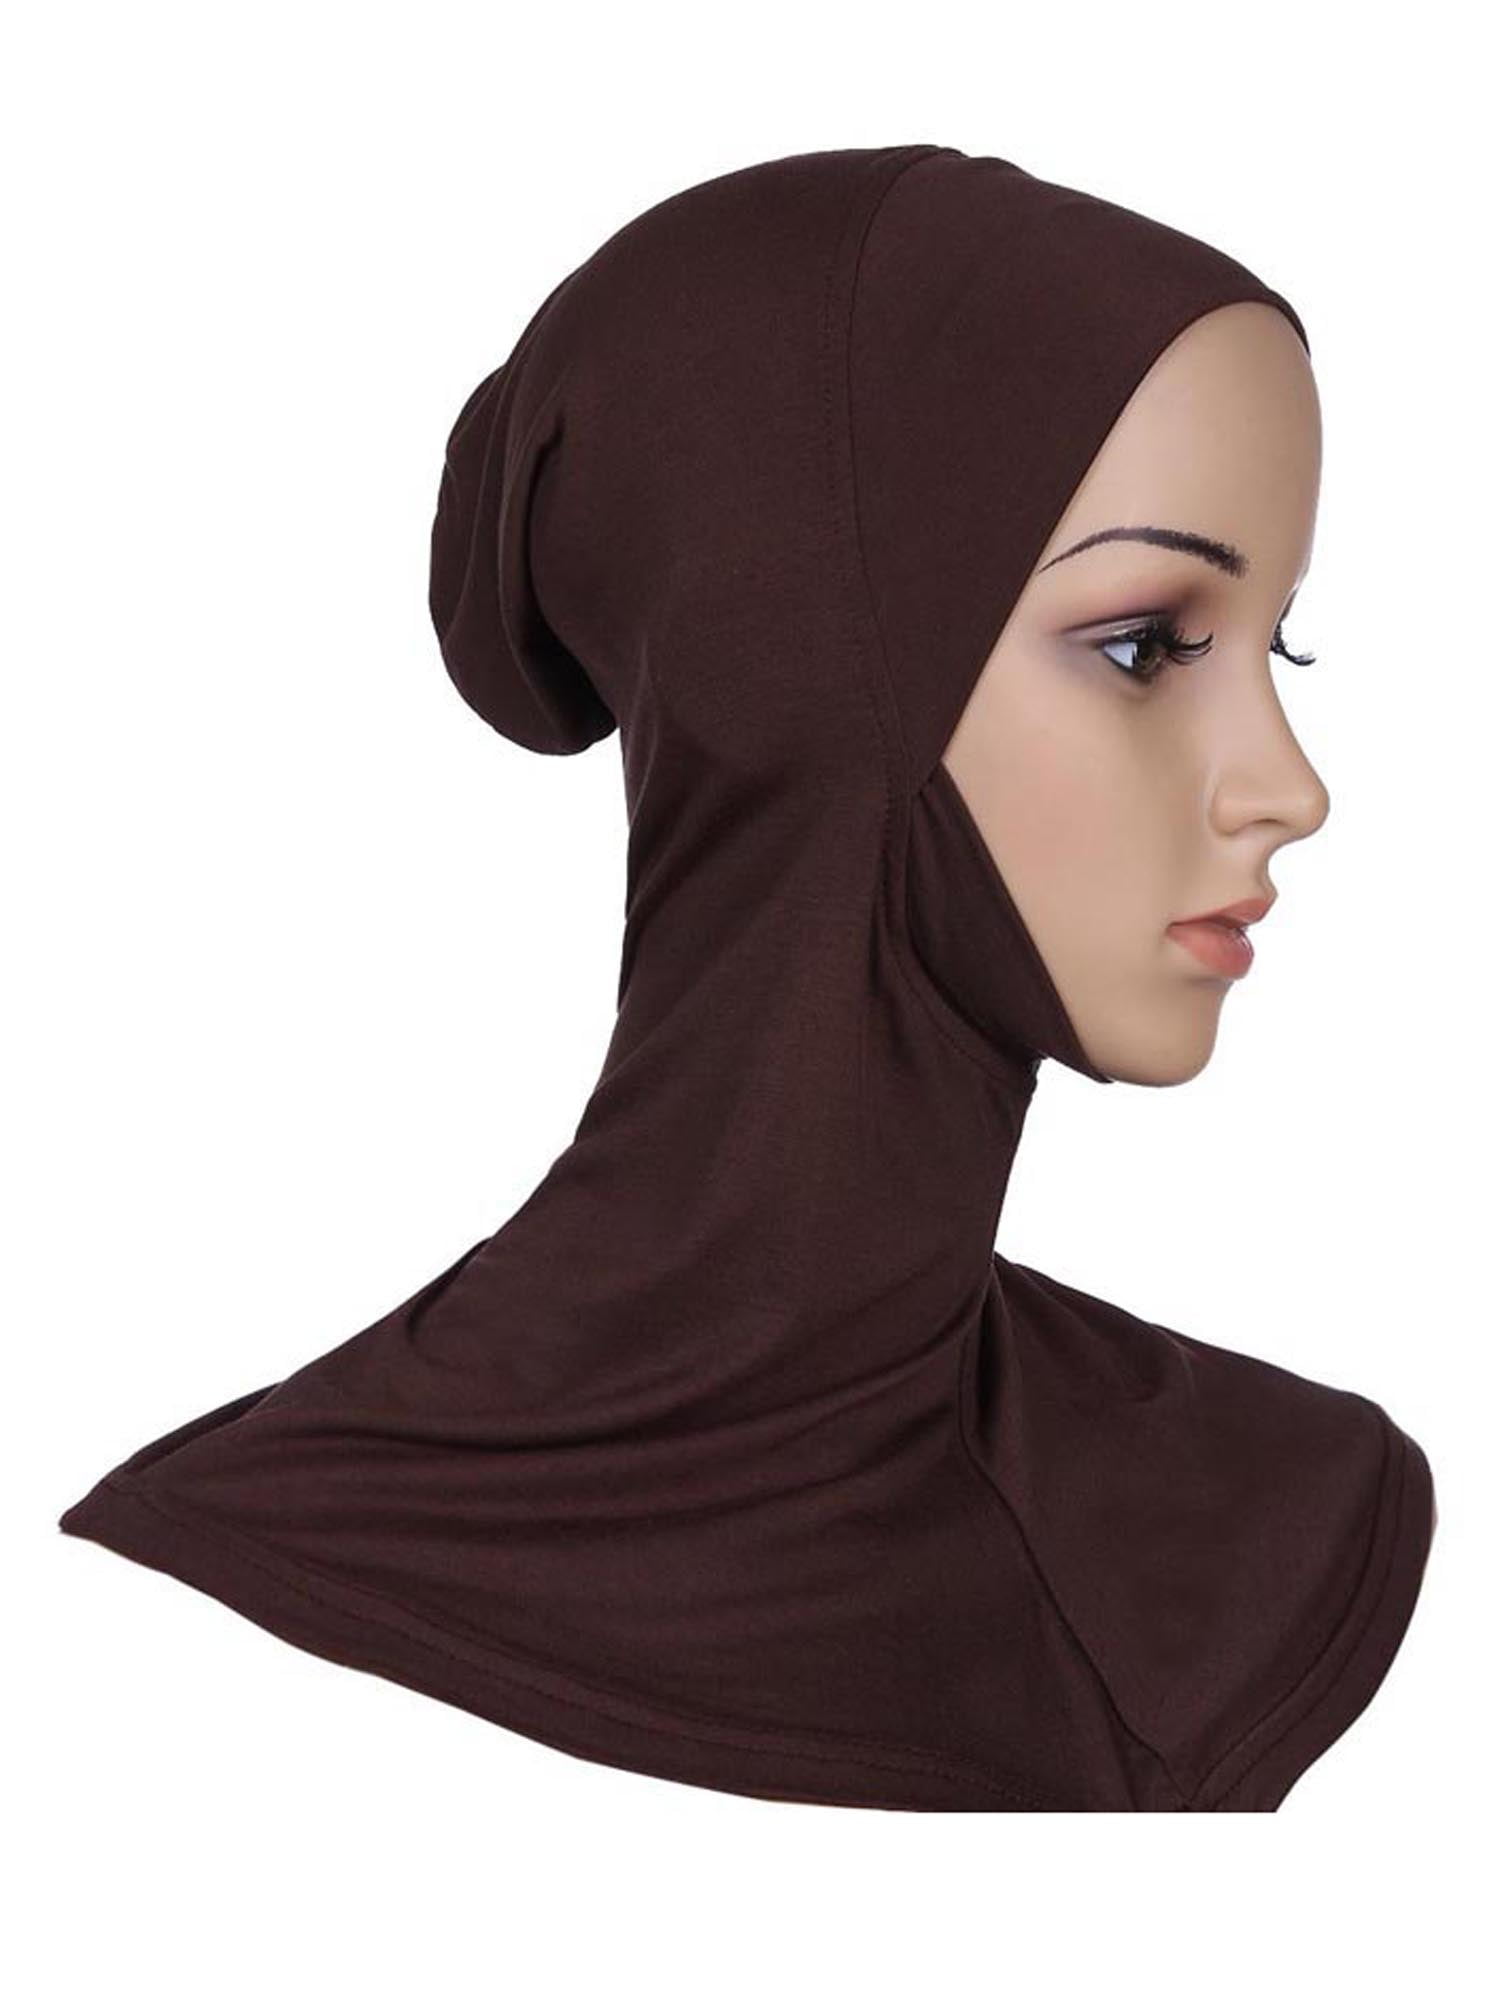 Under Hat Cap Bone Bonnet Ninja Inner Hijabs Women Muslim Islamic Wrap Headwear 